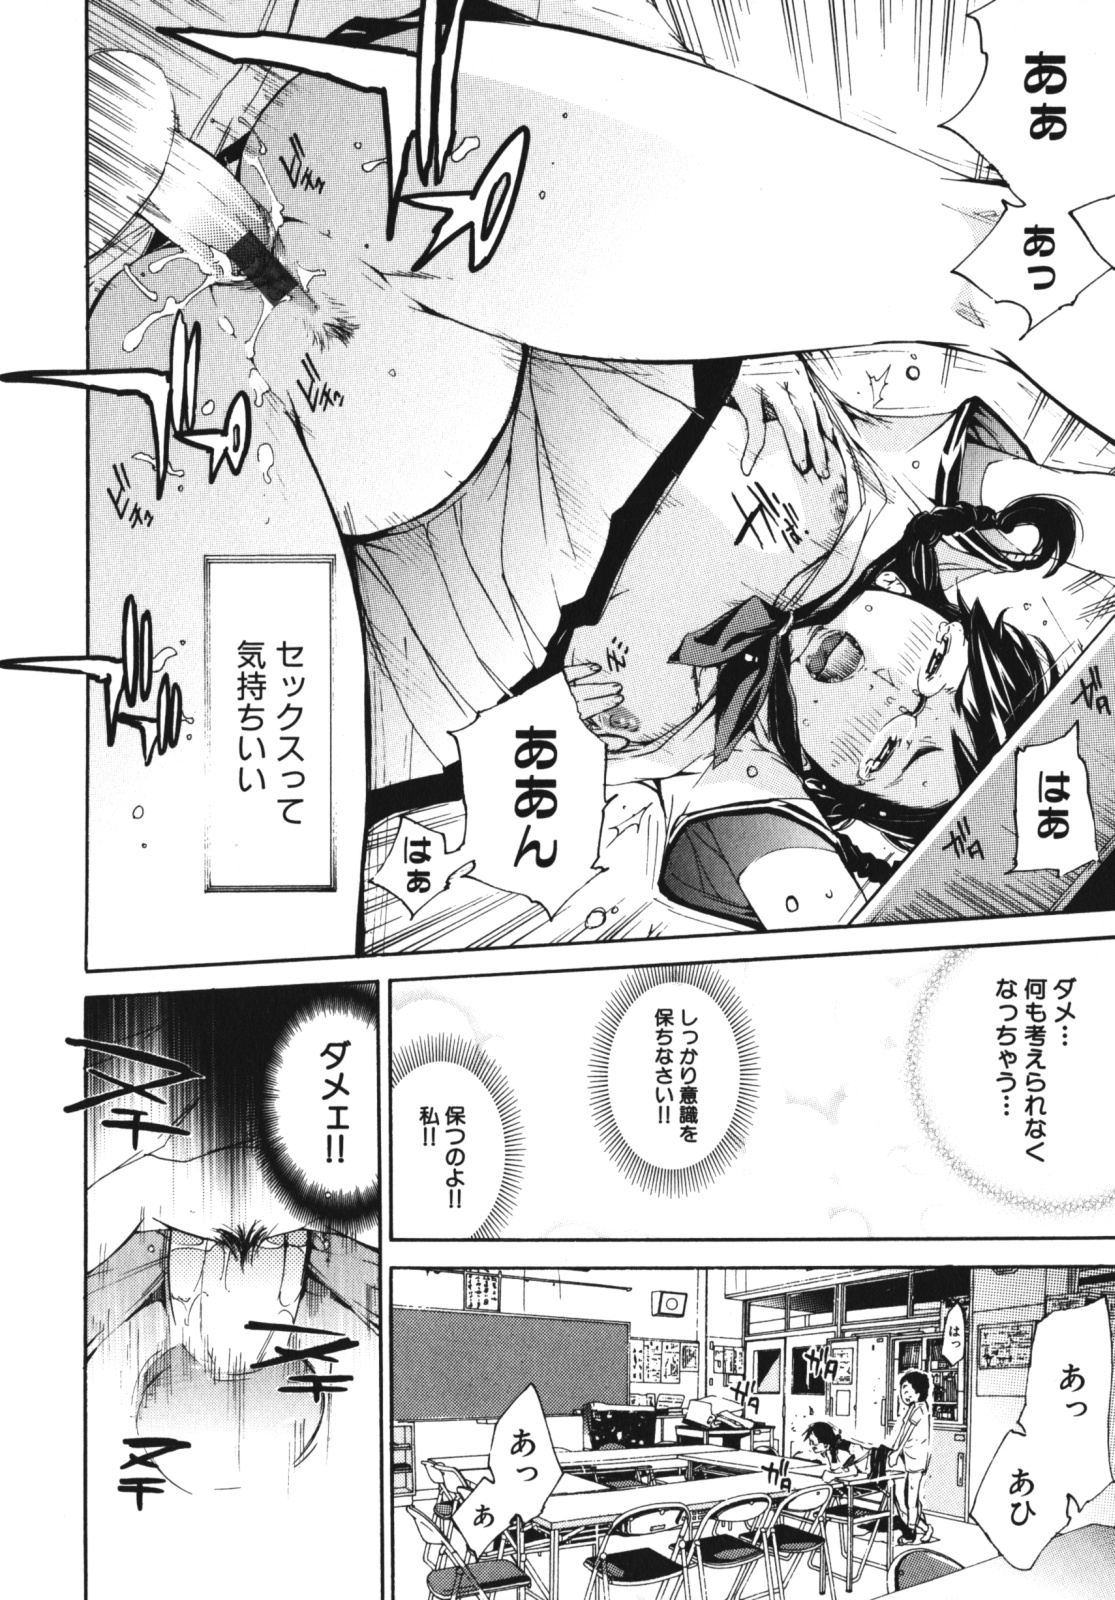 [Anthology] Geki Yaba Vol.4 - Namade Shitene page 39 full